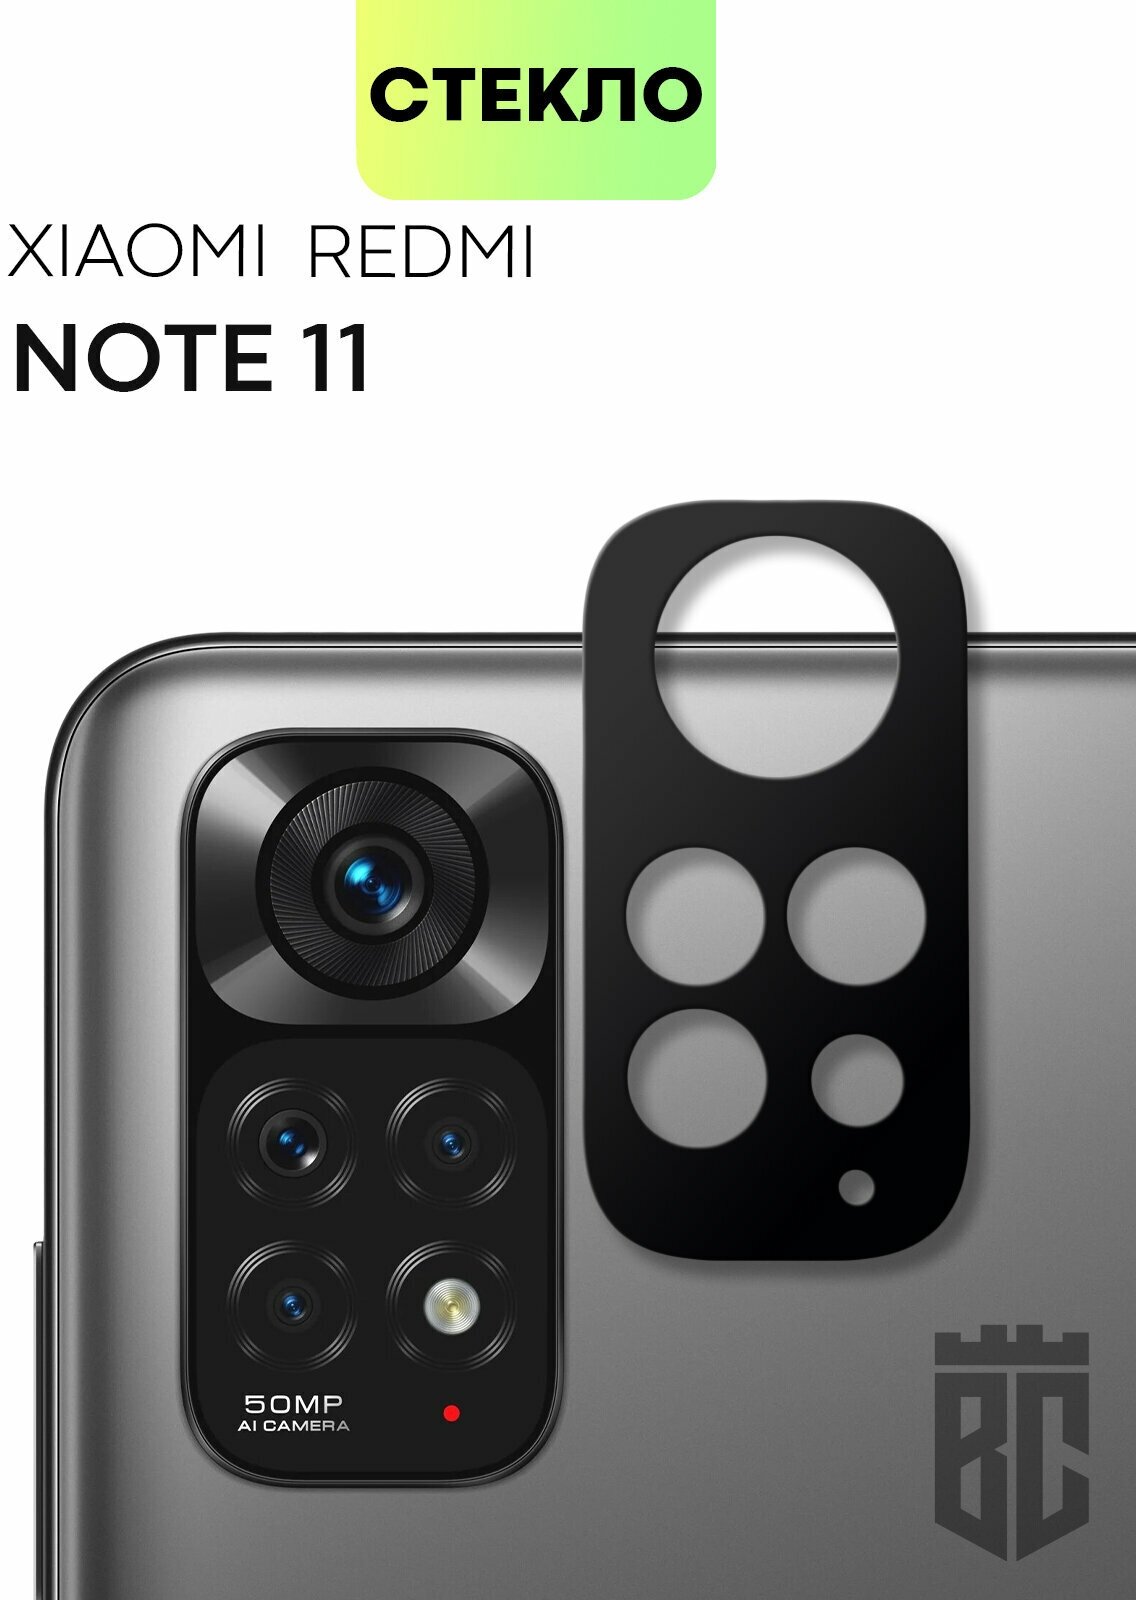 Защитное стекло на камеру телефона Xiaomi Redmi Note 11 (Сяоми Редми Ноут 11 Ксиаоми) стекло BROSCORP для защиты камер смартфона прозрачное с рамкой